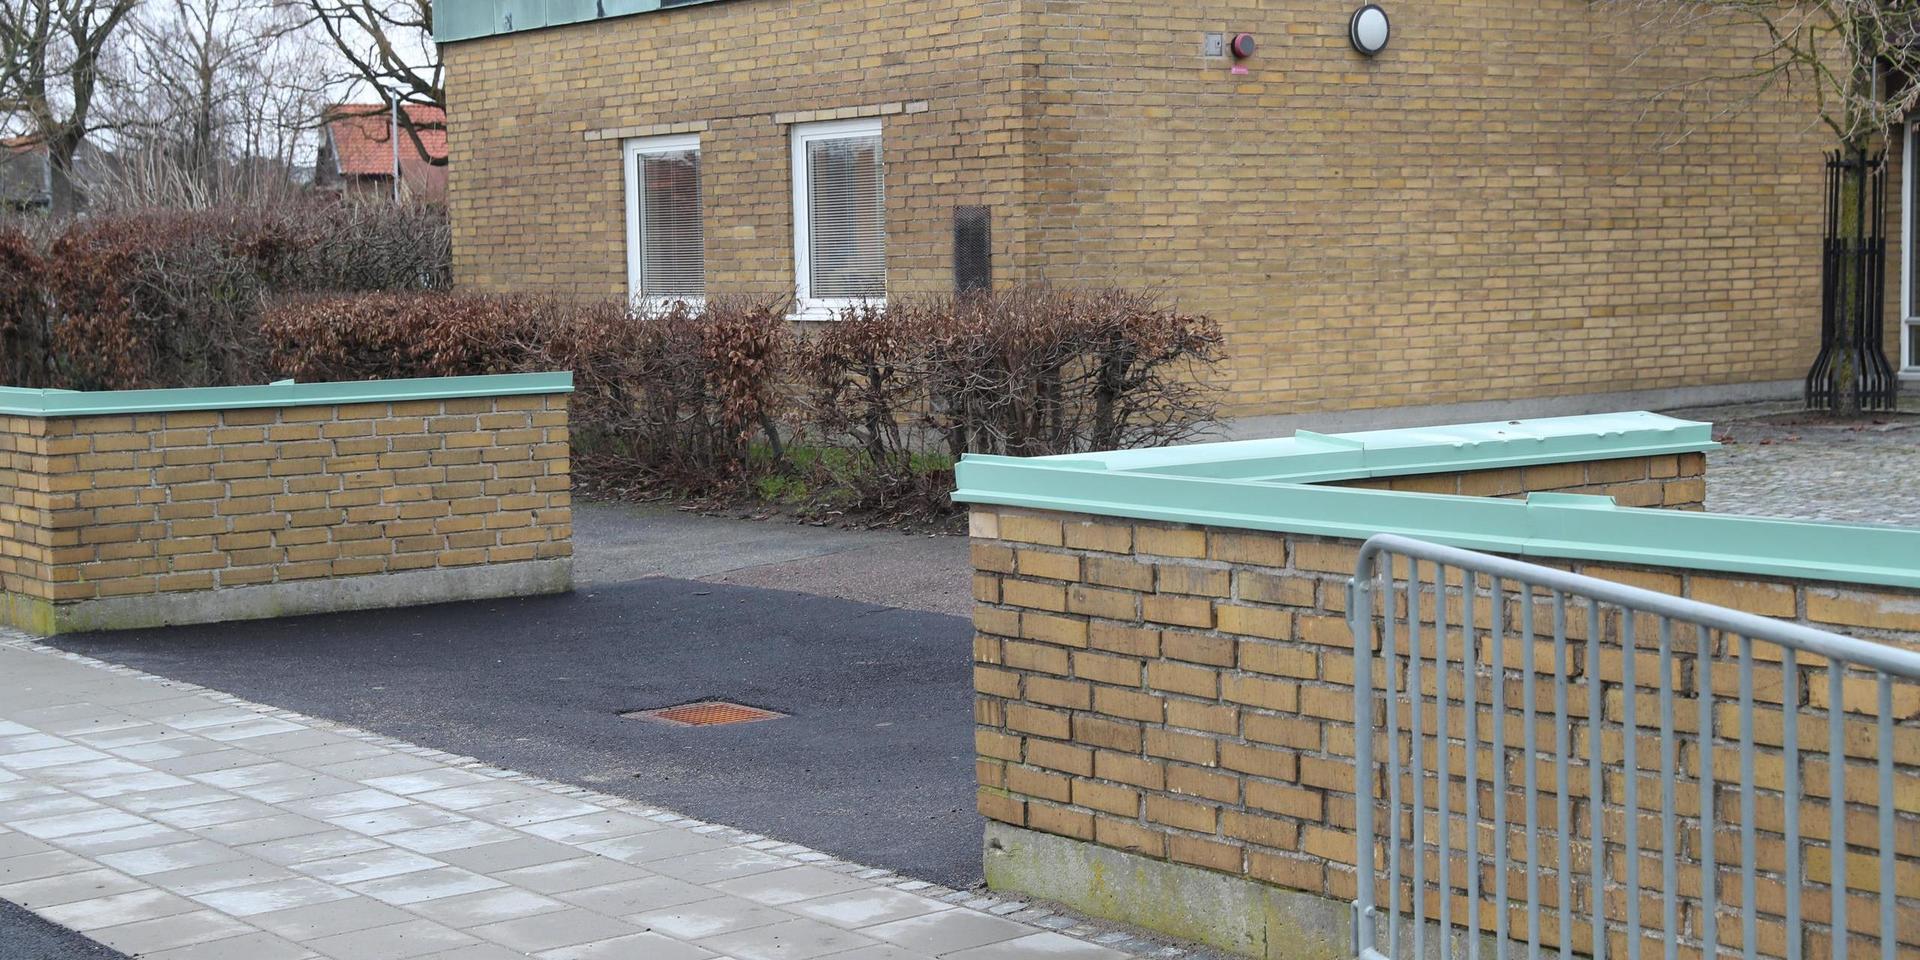 En skolelev fick livshotande skador i samband med ett bråk på en skola i Trelleborg.